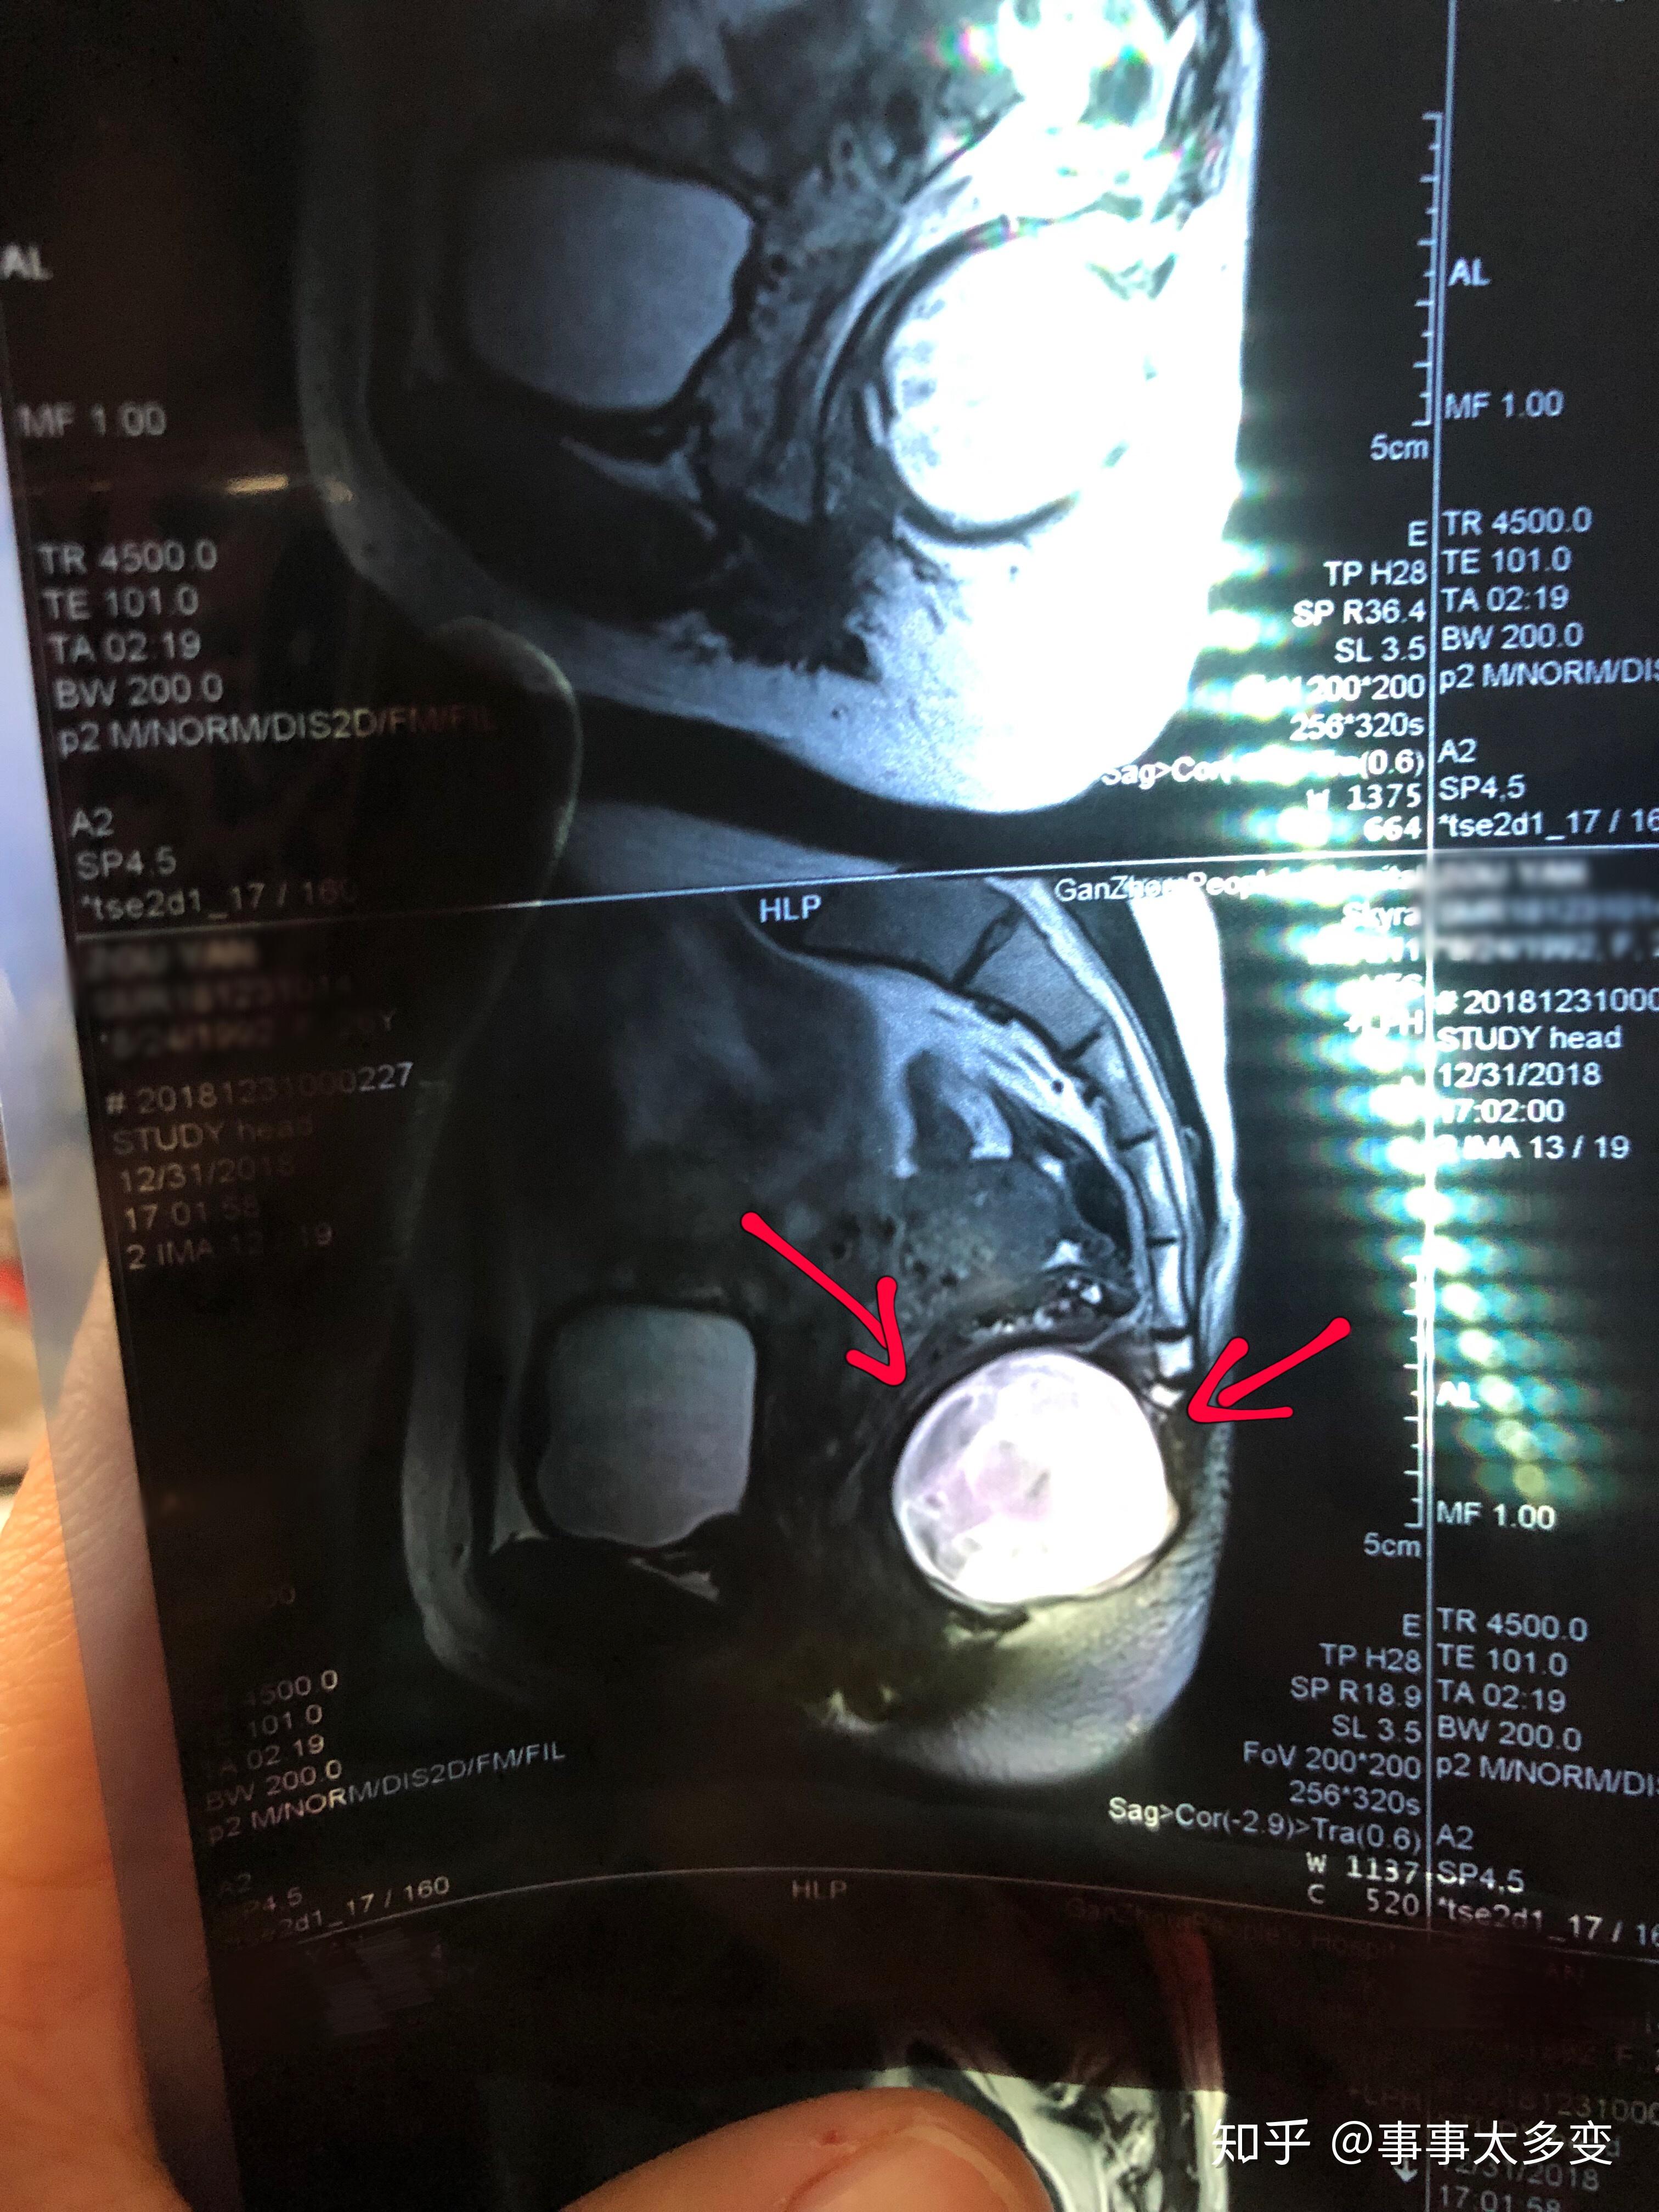 磁共振（MRI）骶尾椎扫描技术 - 知乎